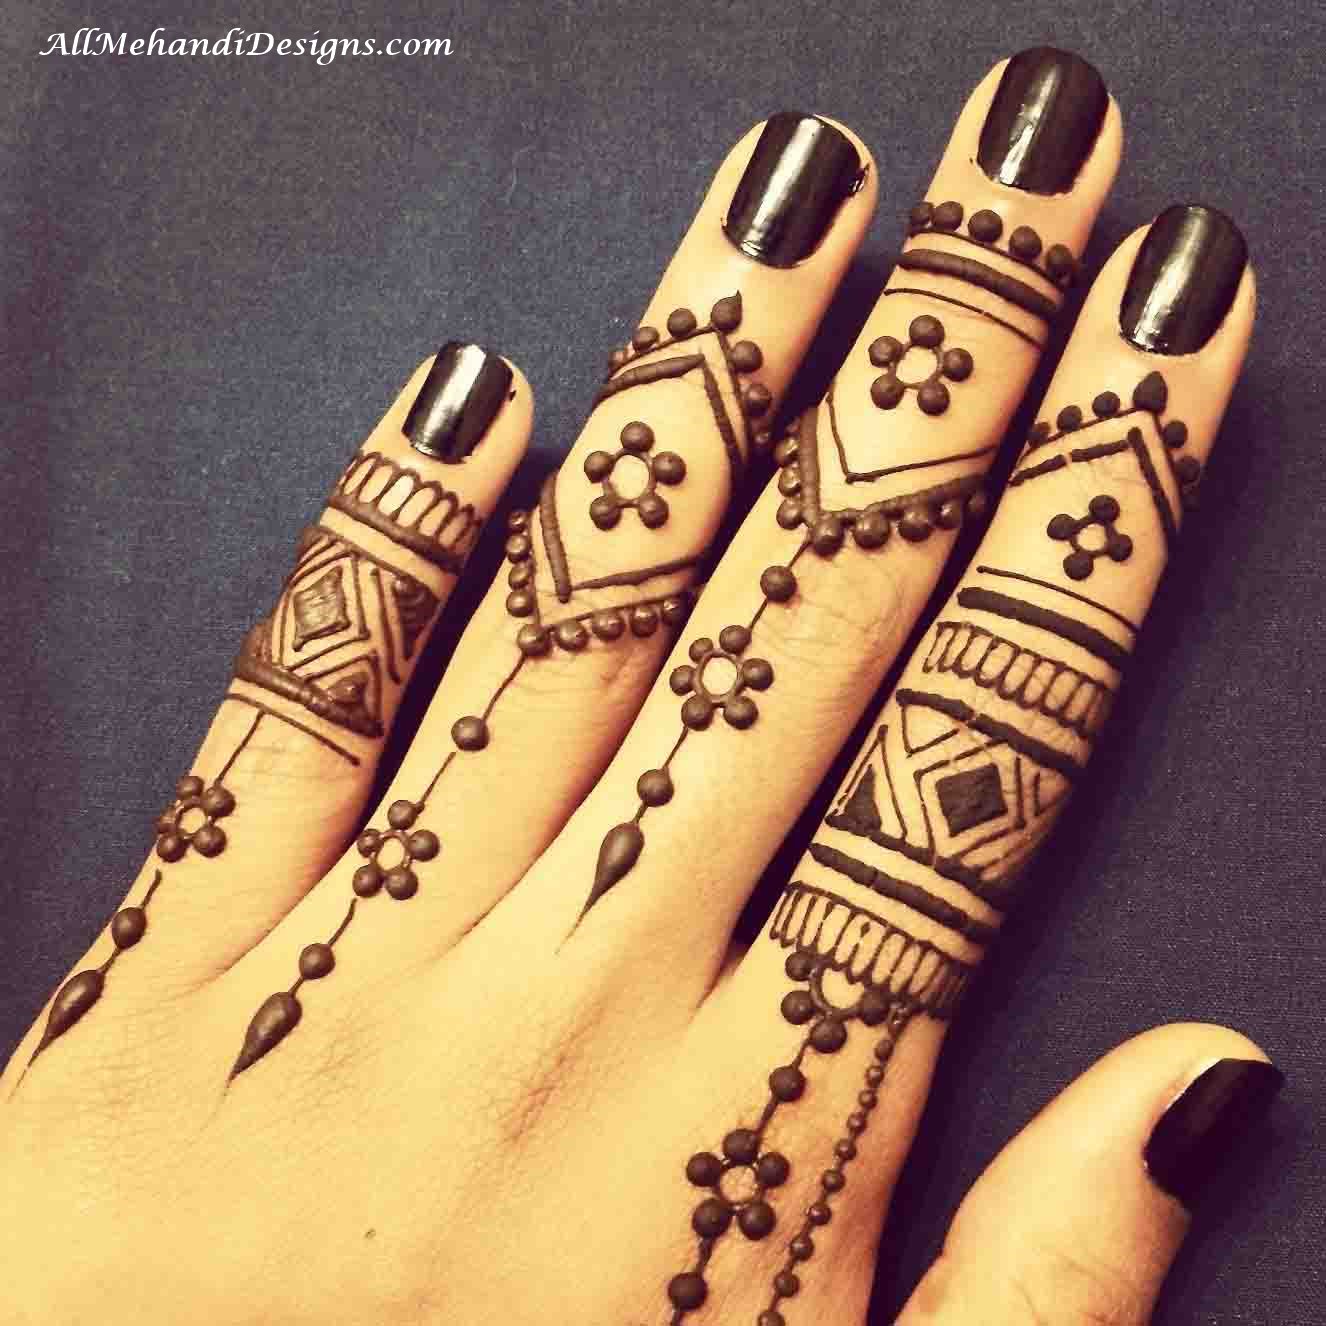 45 Latest Finger Mehndi Designs || Finger Mehndi Style | Bling Sparkle